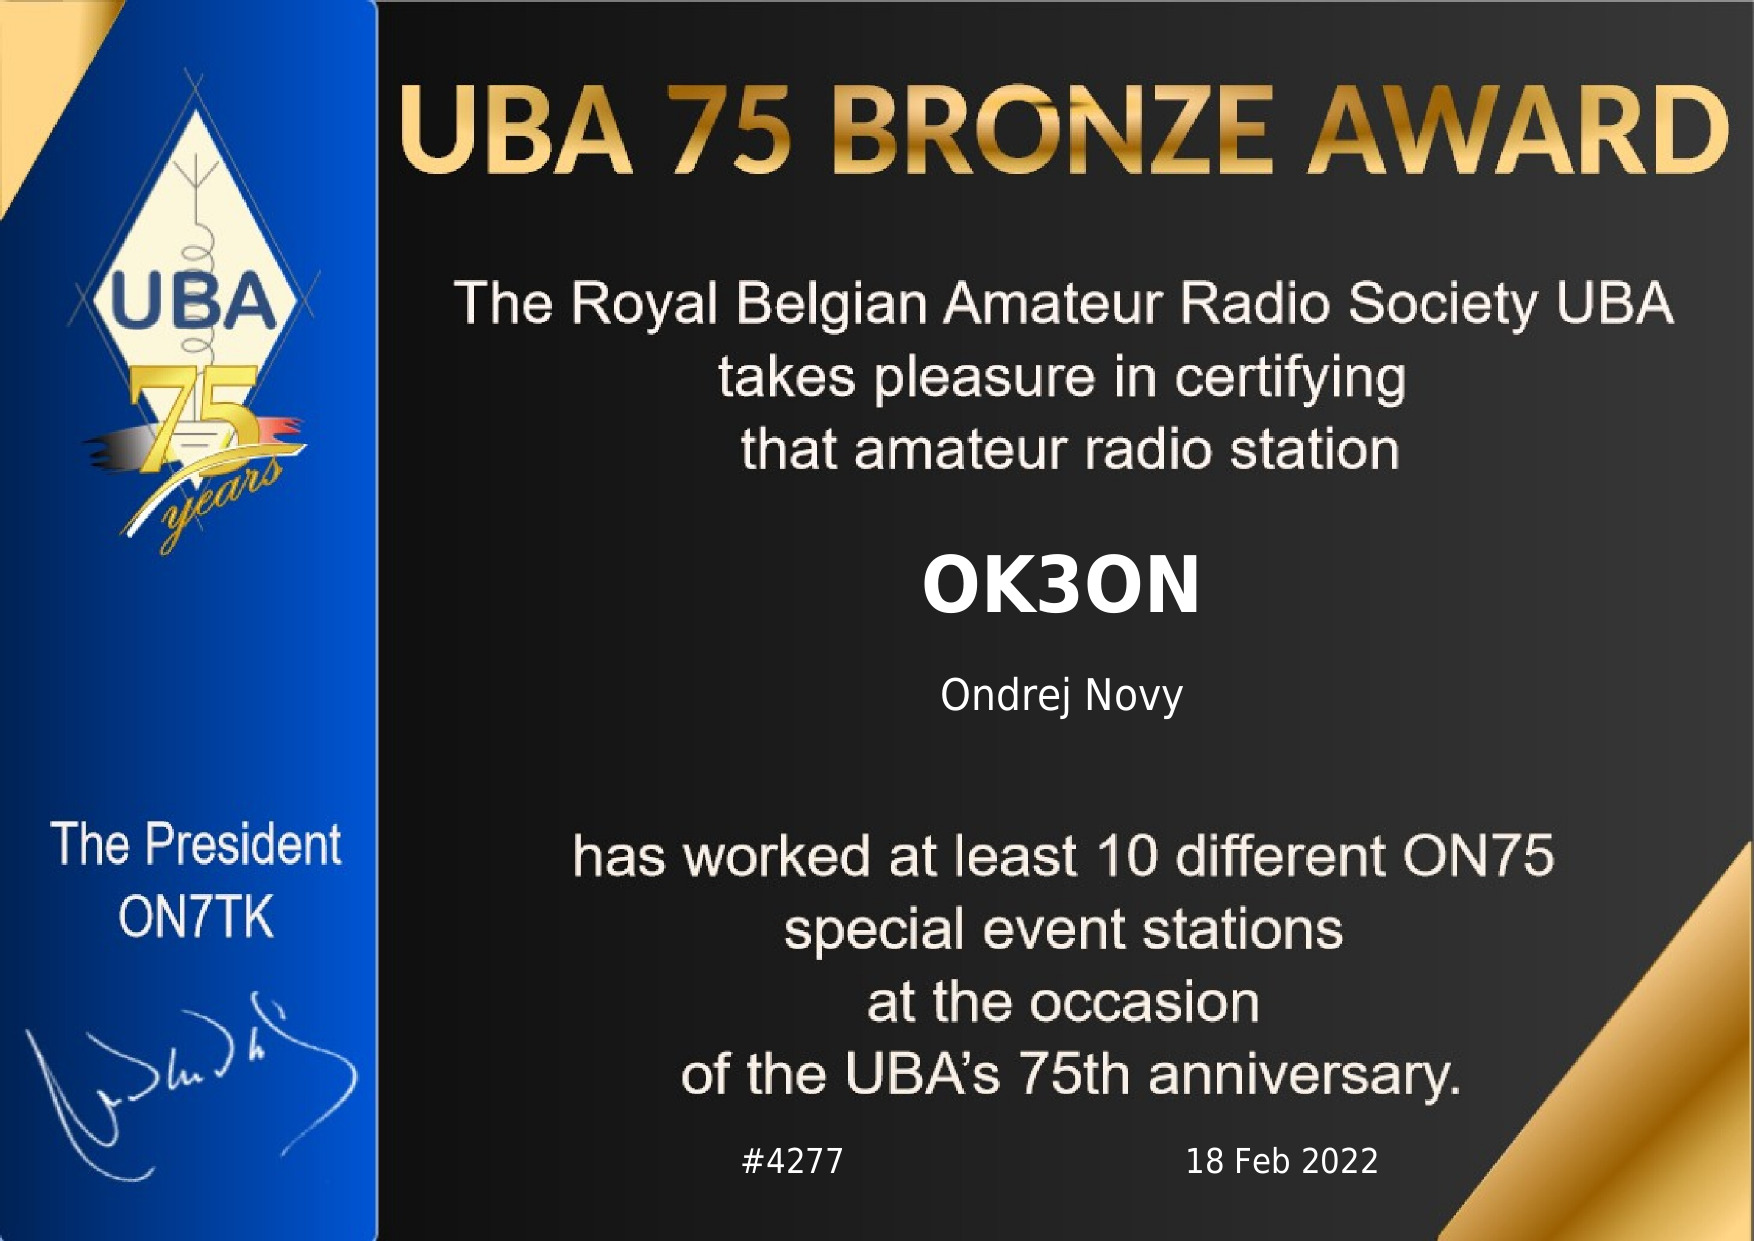 awards/OK3ON-UBA75-BRONZE.jpg